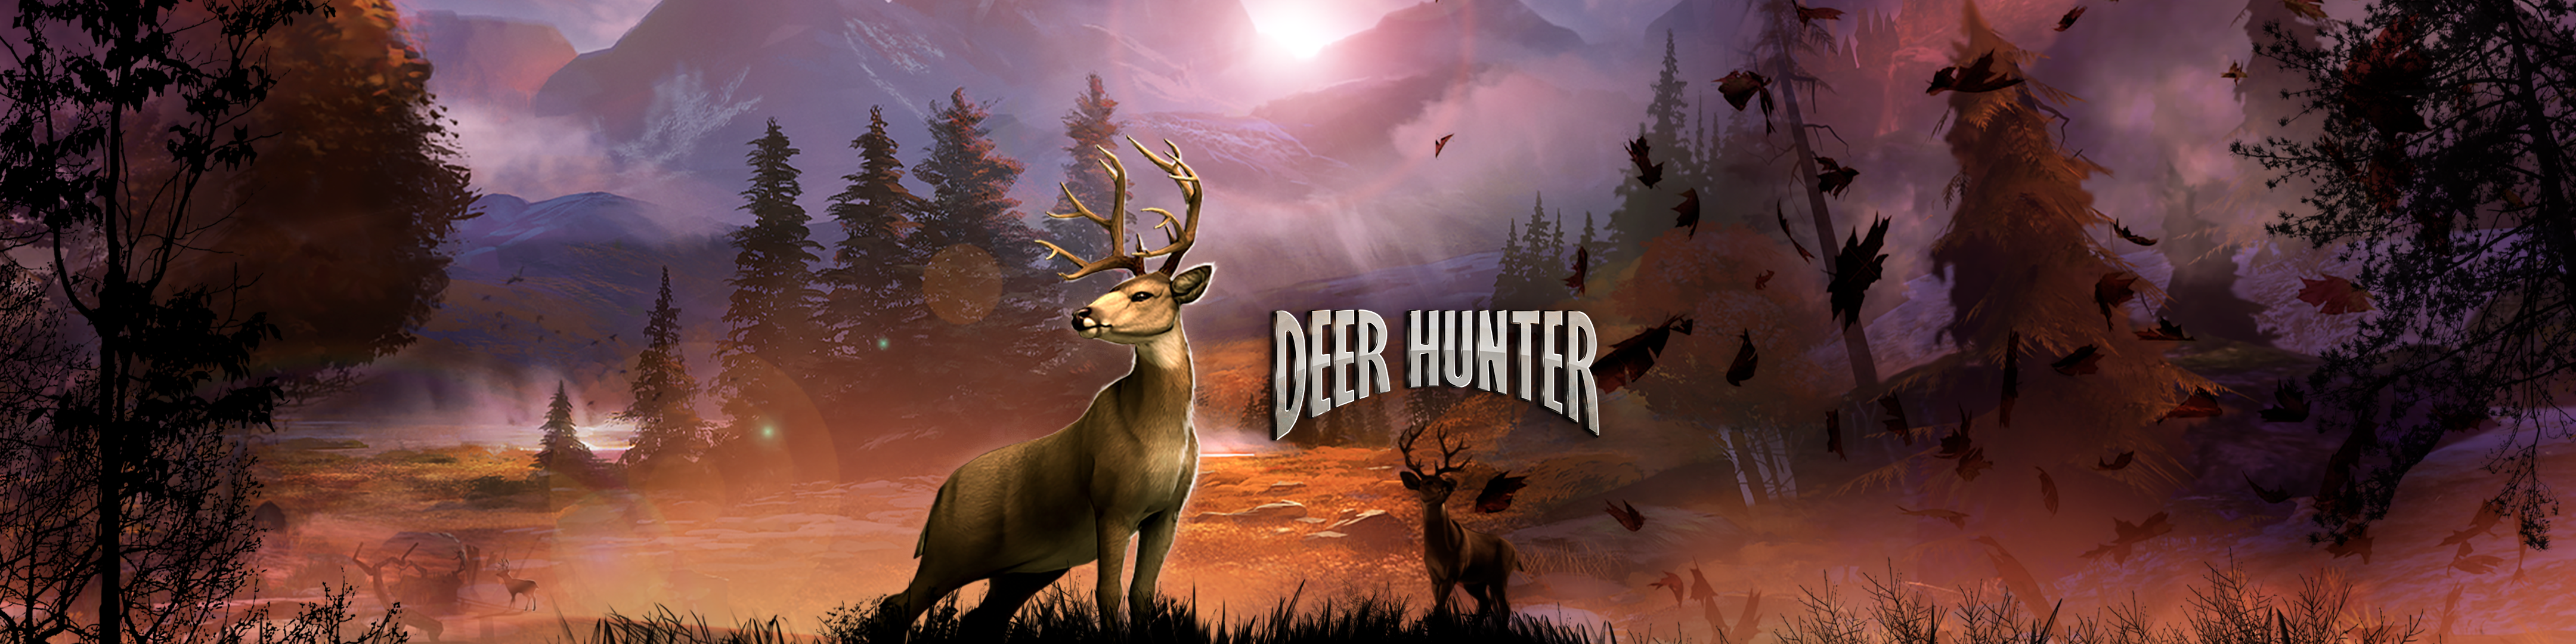 deer hunter 2018